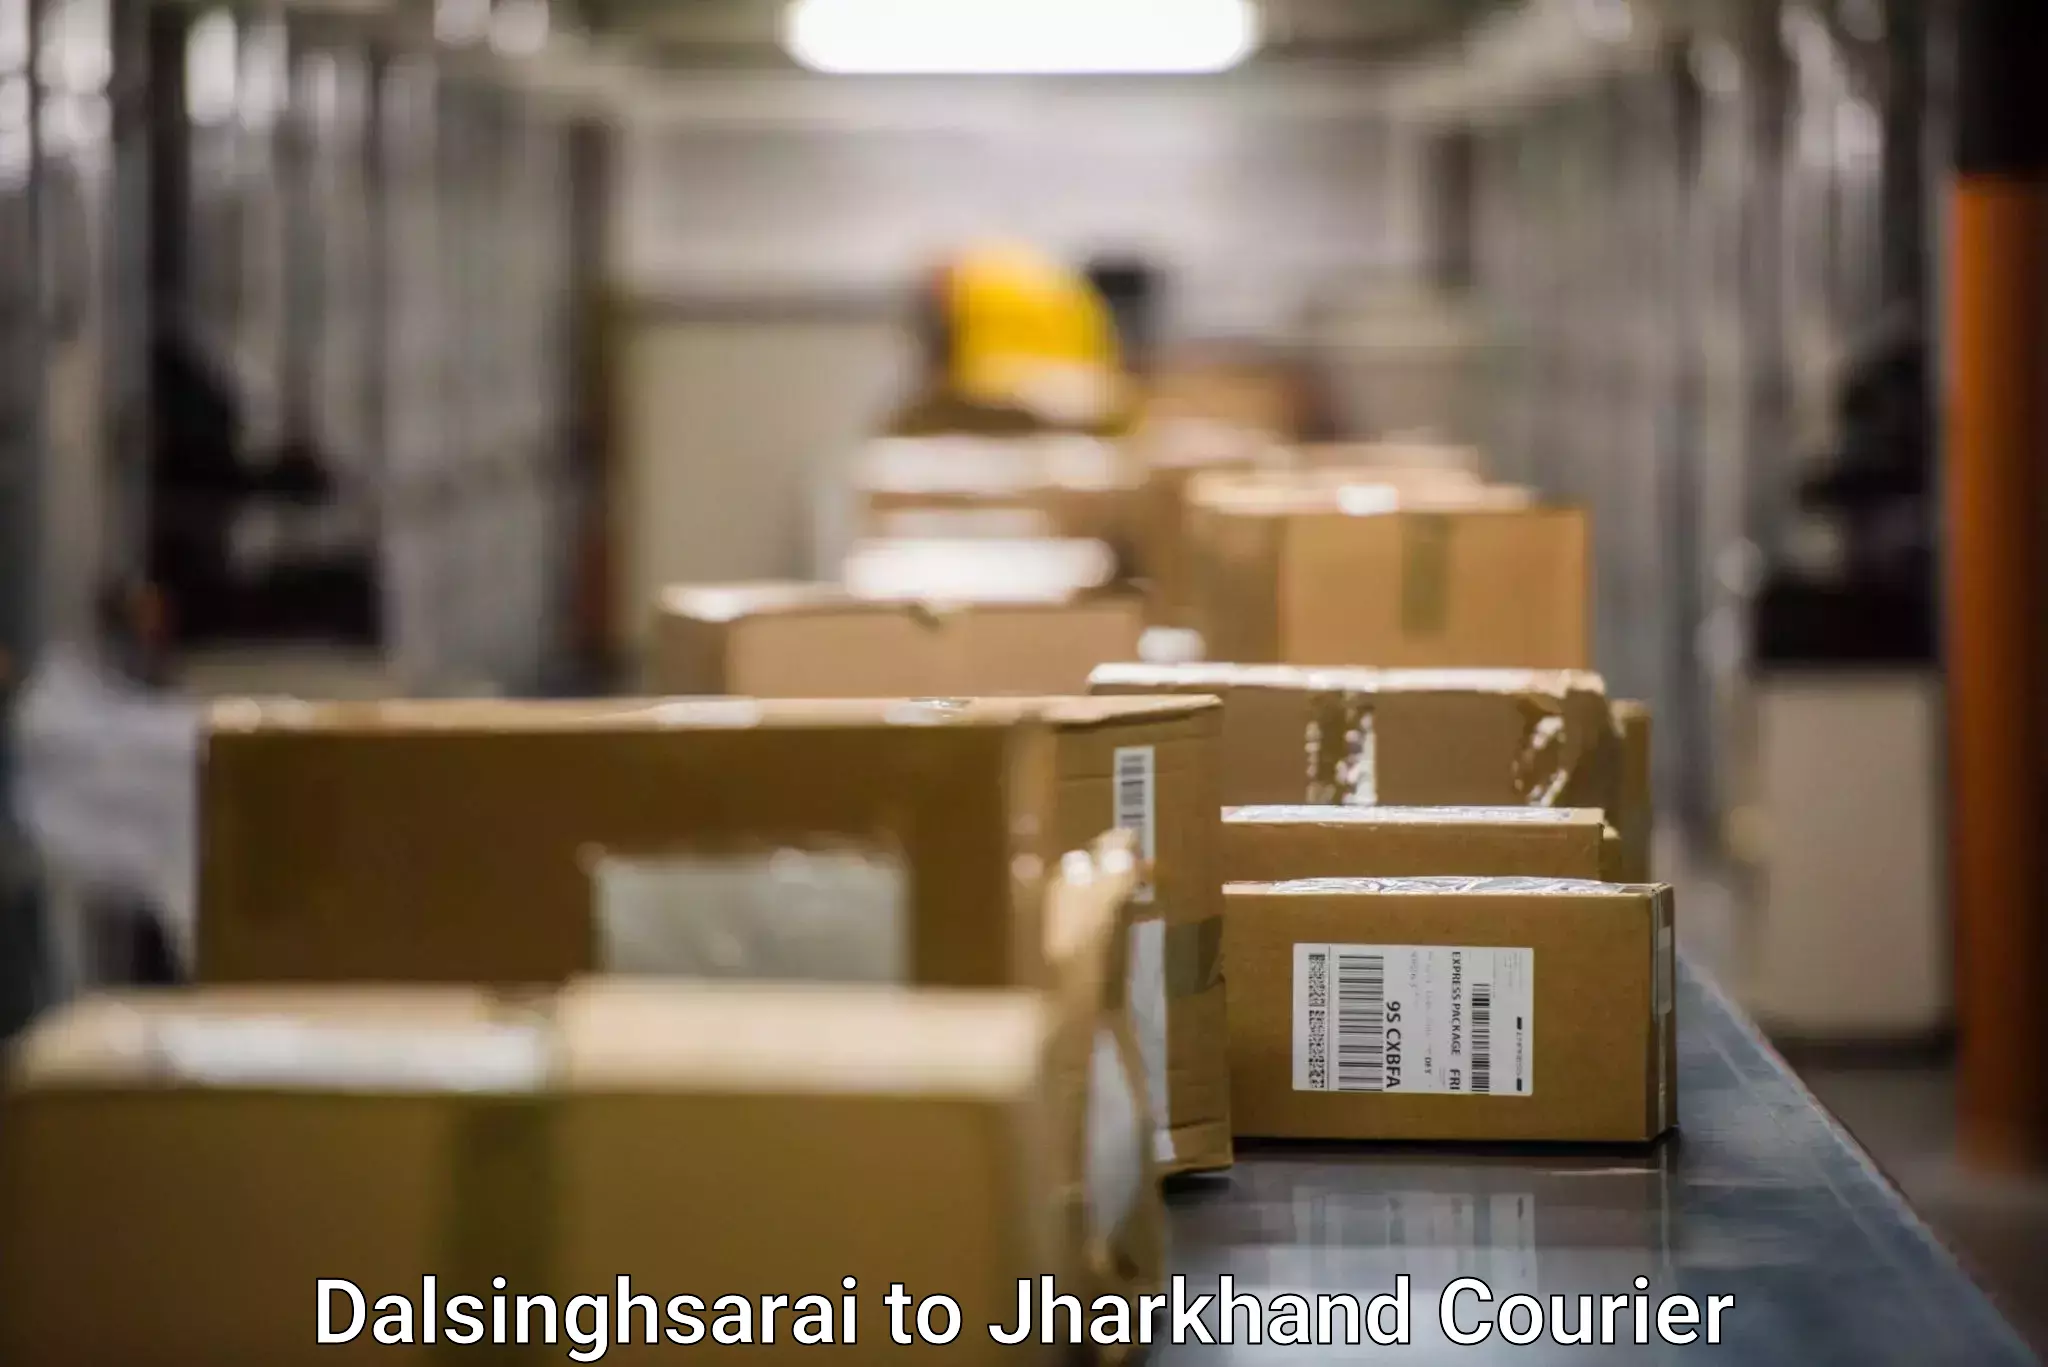 Holiday shipping services Dalsinghsarai to Chakuliya